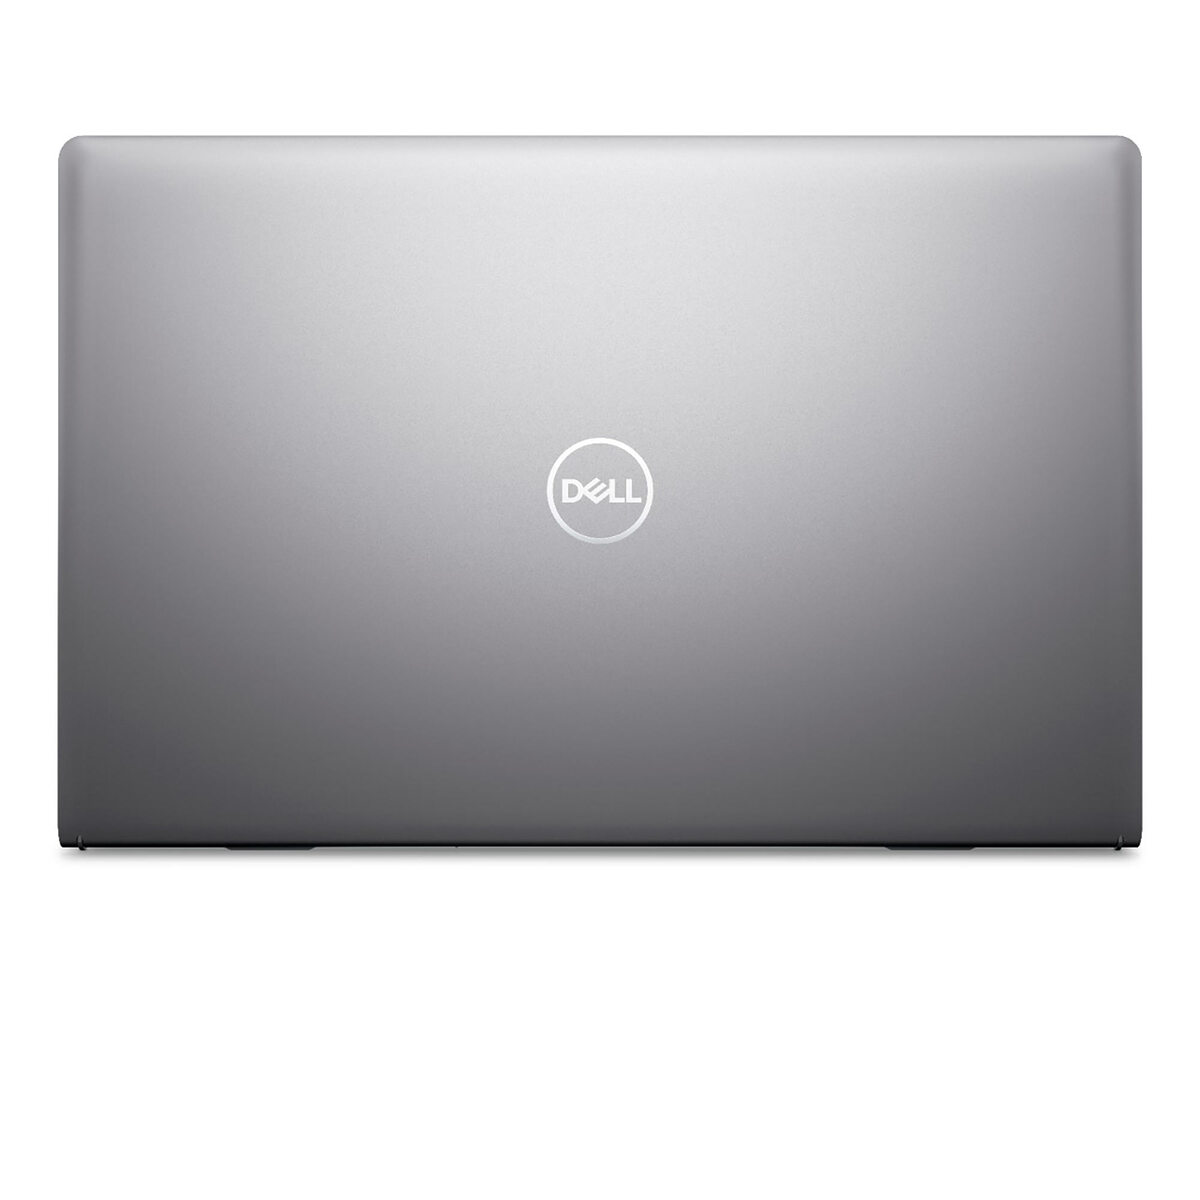 Dell Notebook 515-VOS-6270, AMD Ryzen 7, 15.6" FHD, 8GB RAM, 512GB SSD, Windows 11